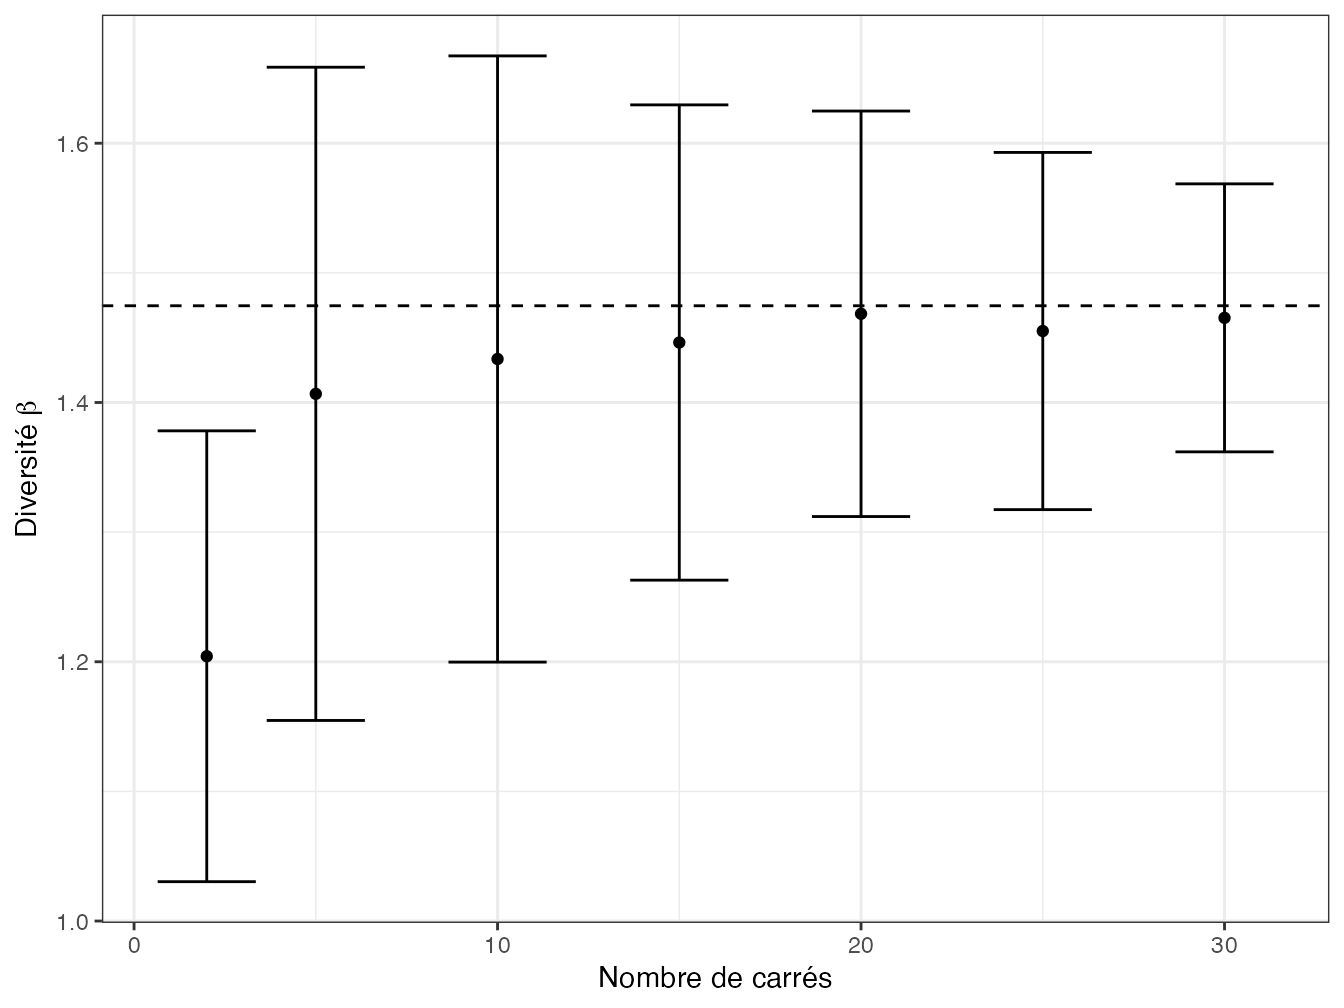 Estimation de la diversité \(\beta\) entre carrés de BCI. La diversité est calculée à partir du nombre de carrés en abscisse, de 2 à 30, tirés aléatoirement. La valeur en ordonnée est la diversité d’ordre 2 moyenne sur 100 tirages, les barres représentent l’écart-type. Aux erreurs d’estimation près et dès 5 carrés (nécessaires pour représenter l’ensemble du dispositif), la valeur de la diversité \(\beta\) ne dépend pas du nombre de carrés. La ligne horizontale représente la diversité \(\beta\) entre tous les carrés.